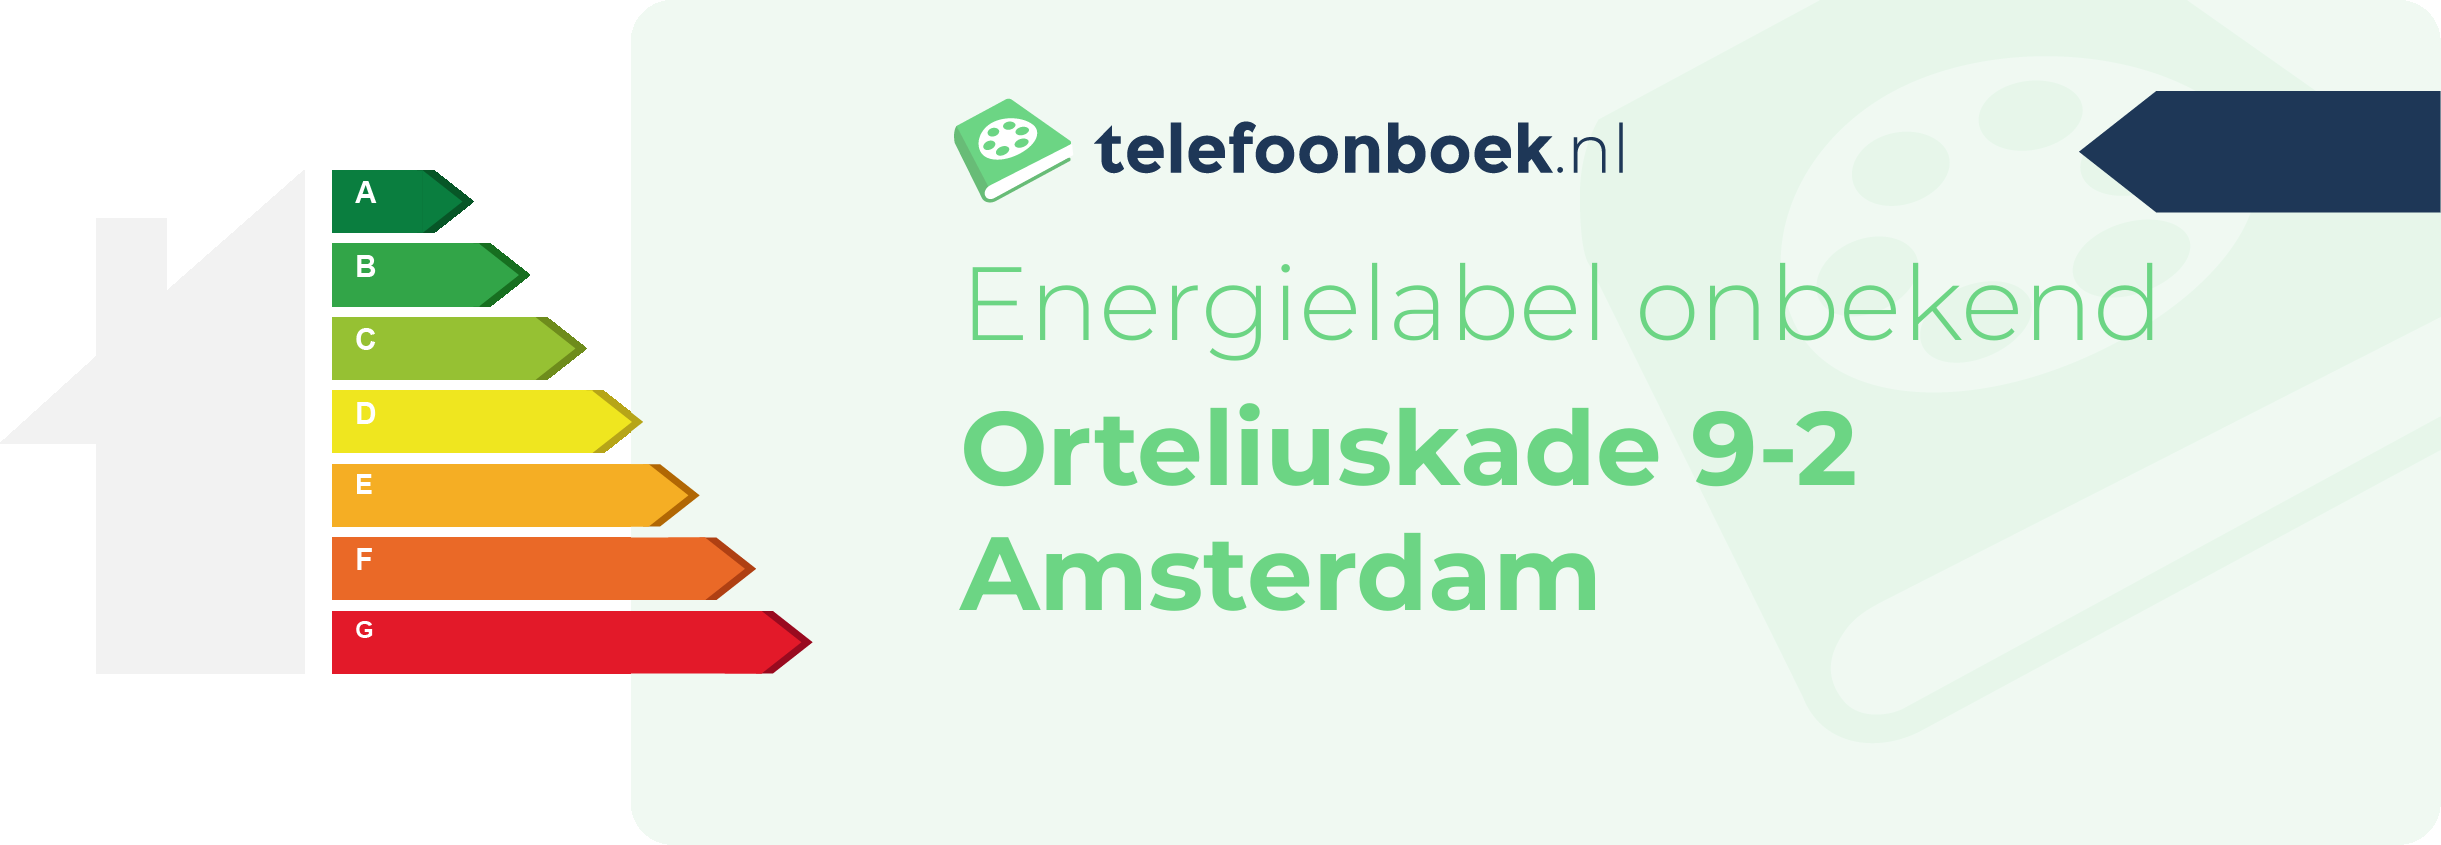 Energielabel Orteliuskade 9-2 Amsterdam